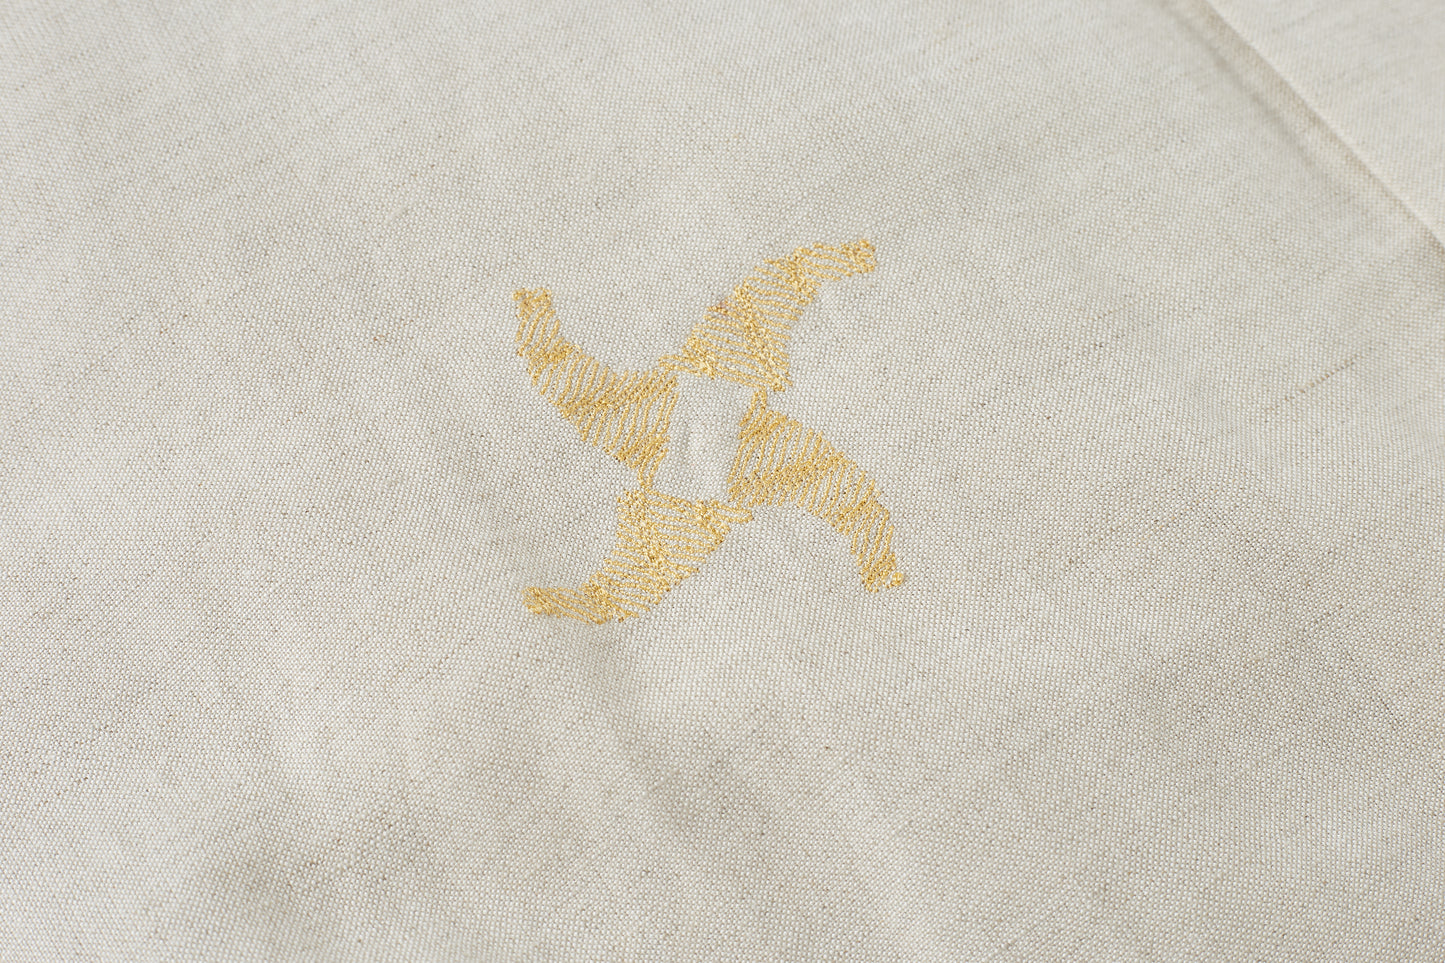 CHILLHANG日系棉麻刺繡沙灘恤衫(白色)